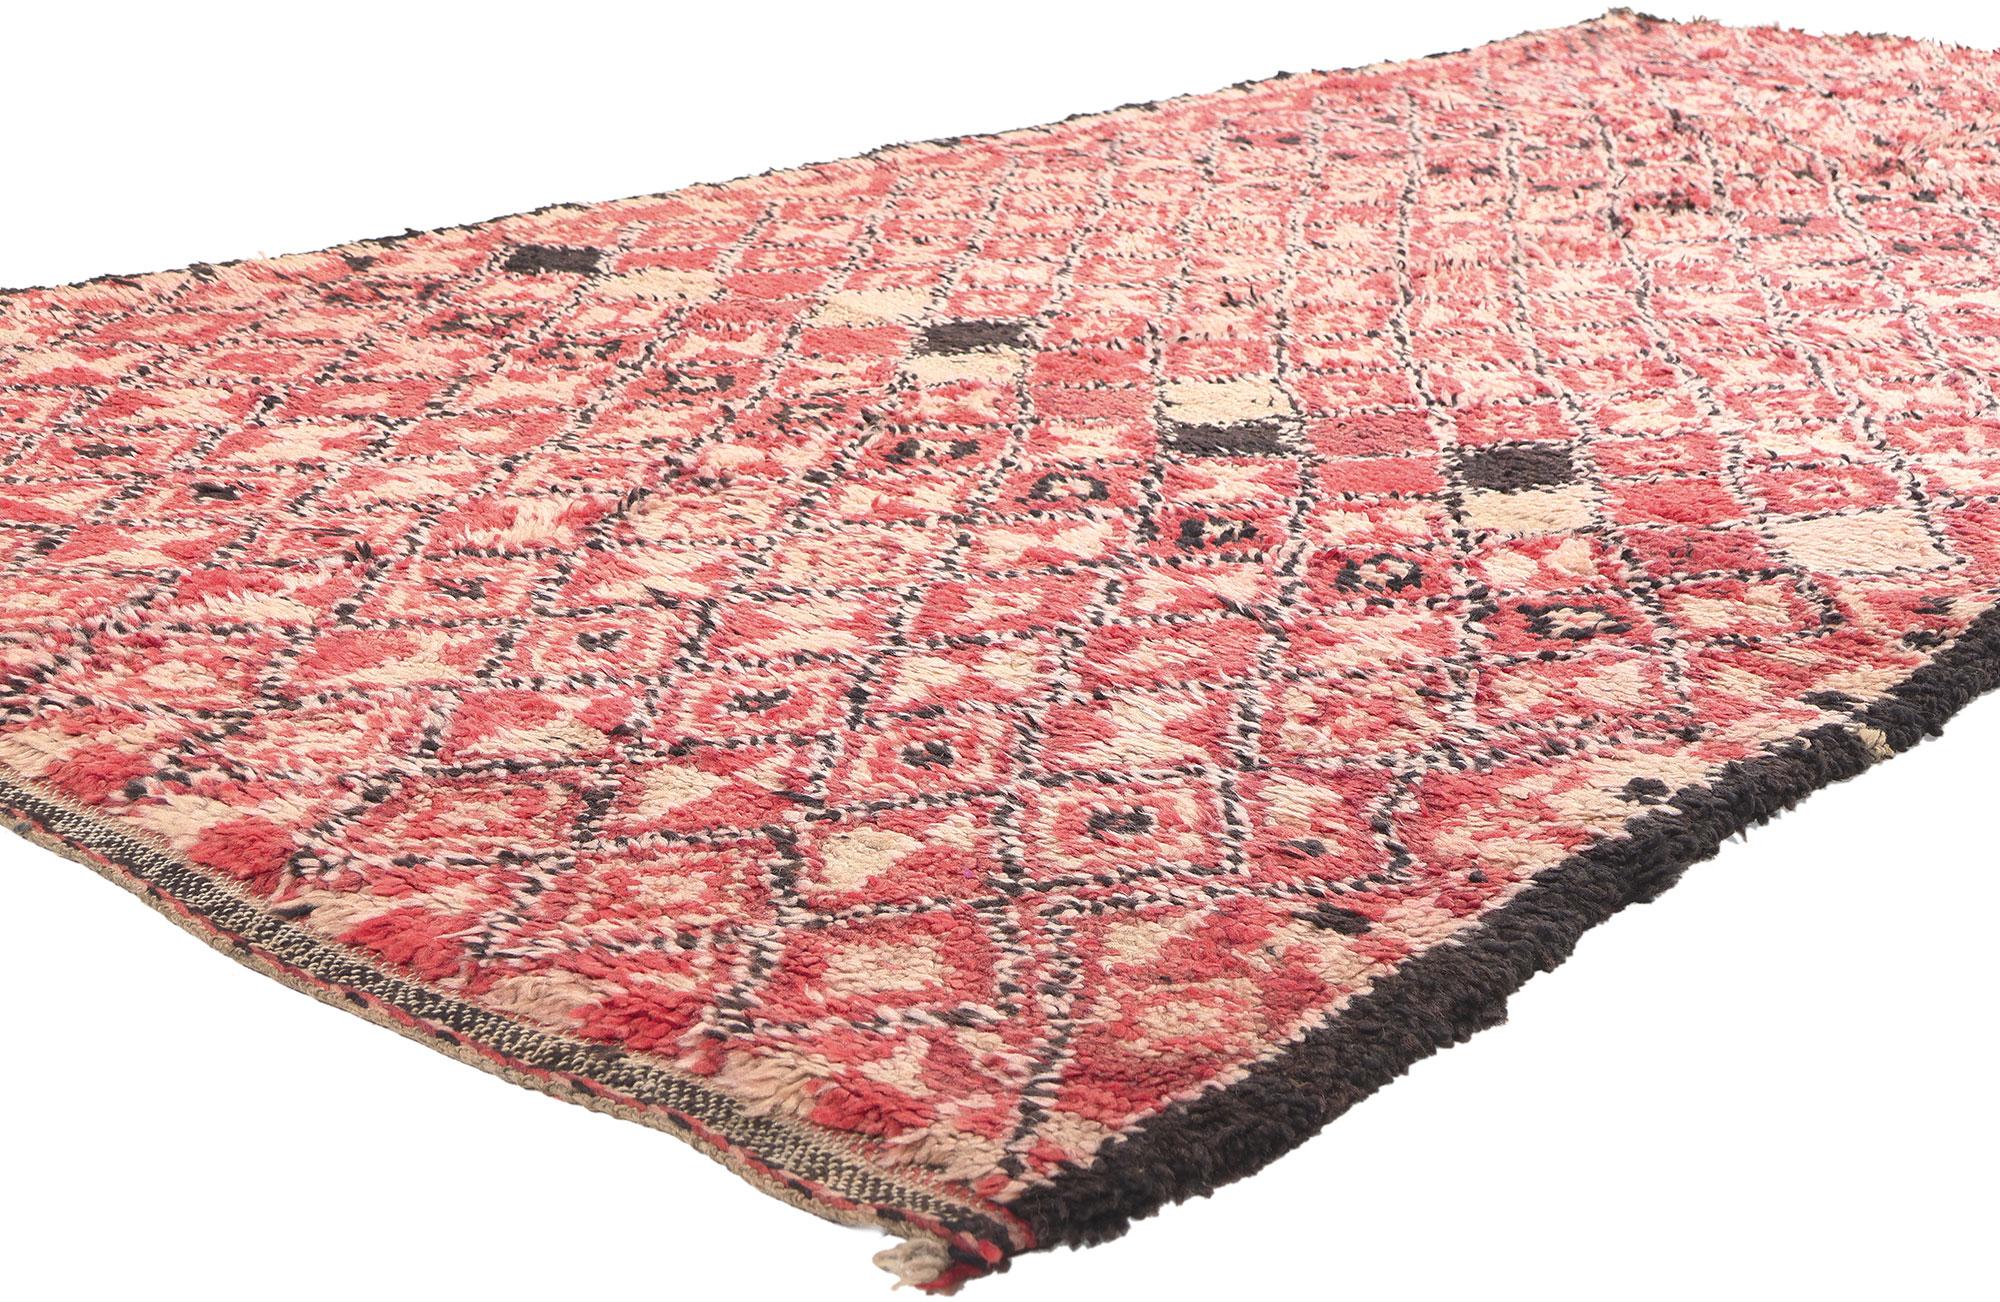 21243 Vintage Rot Beni MGuild Marokkanischer Teppich, 05'04 x 10'05. Dieser handgeknüpfte marokkanische Beni Mguild-Teppich aus Wolle, der in das mystische Erbe des Berberhandwerks eintaucht, ist eine faszinierende Verschmelzung von Midcentury- und